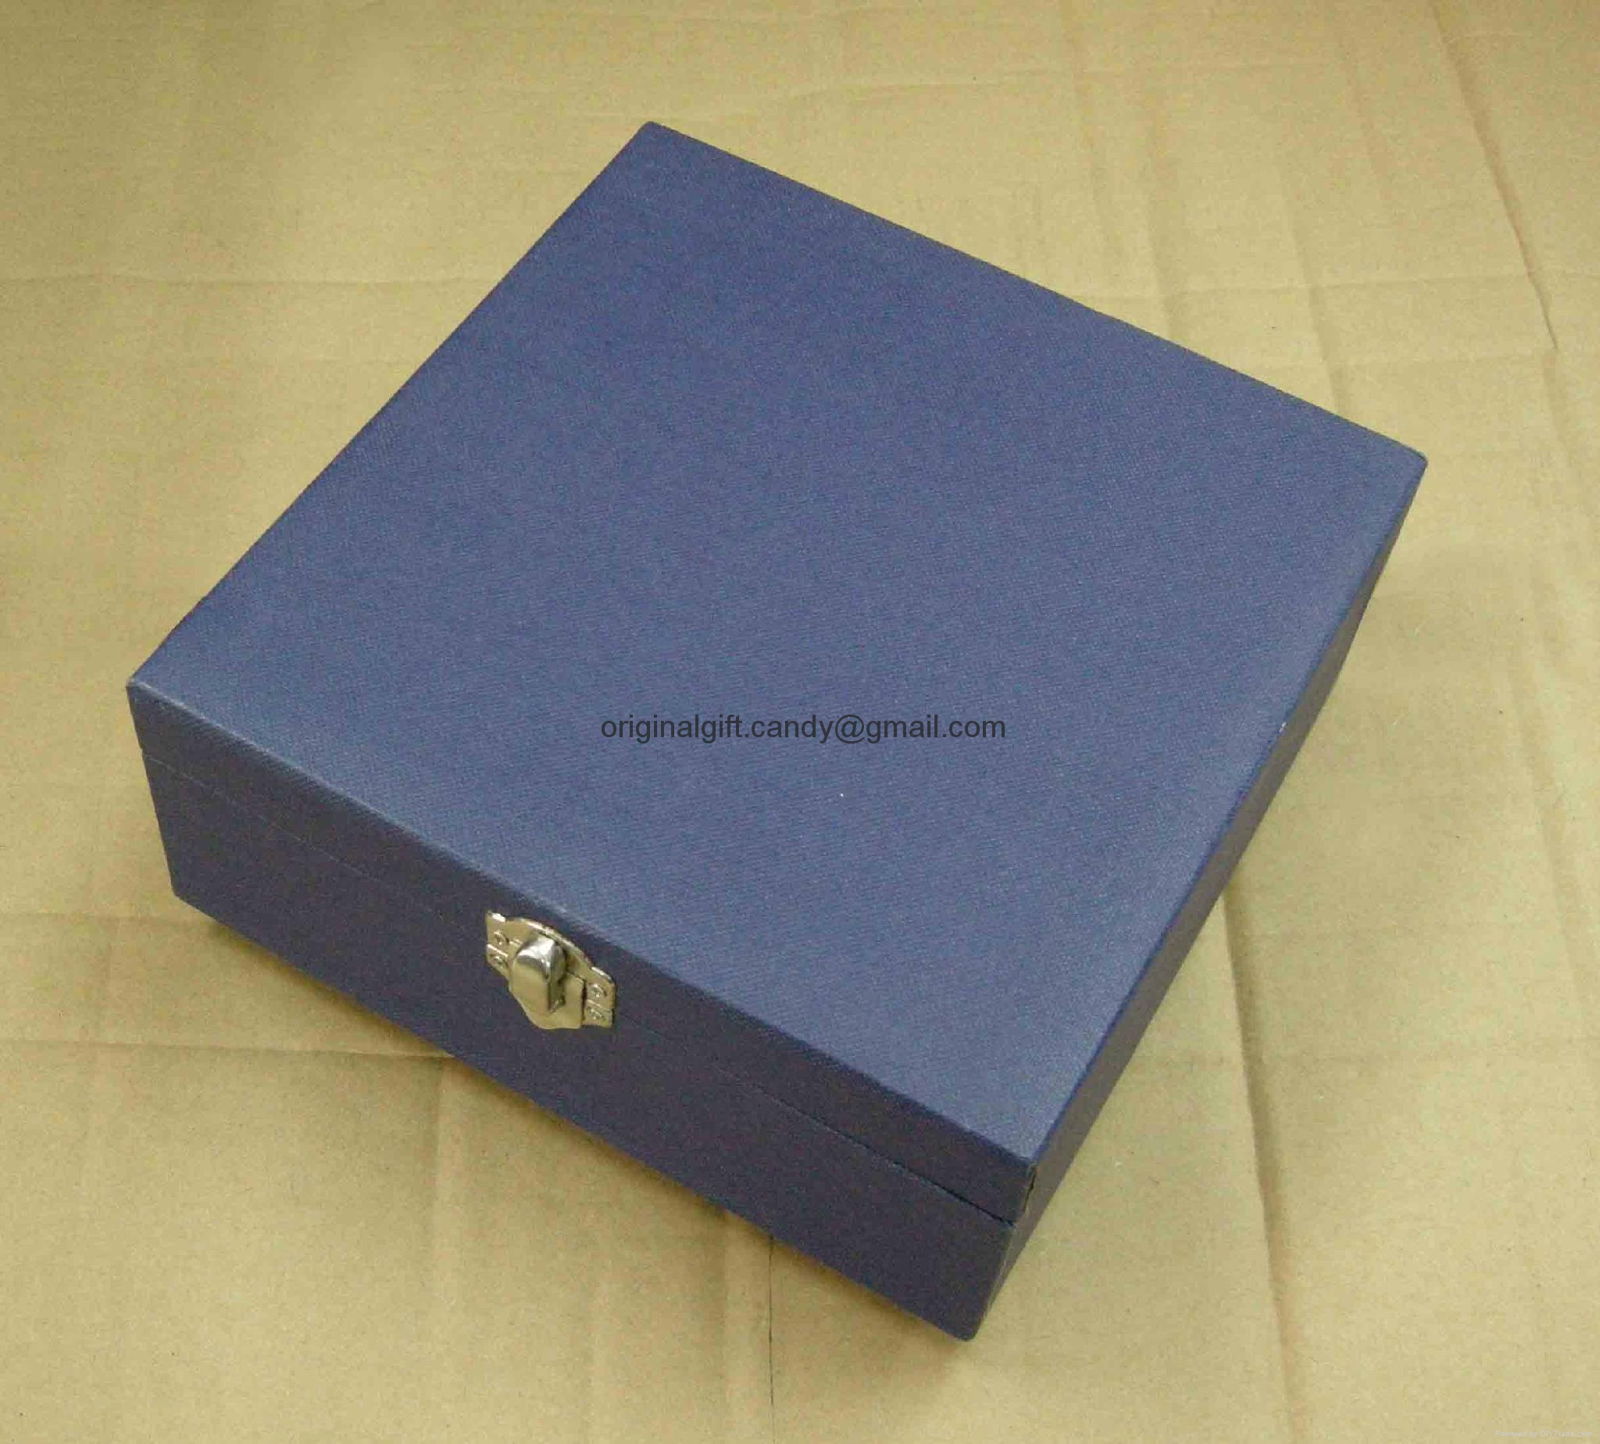 訂造禮盒,tailor-made gift box 5